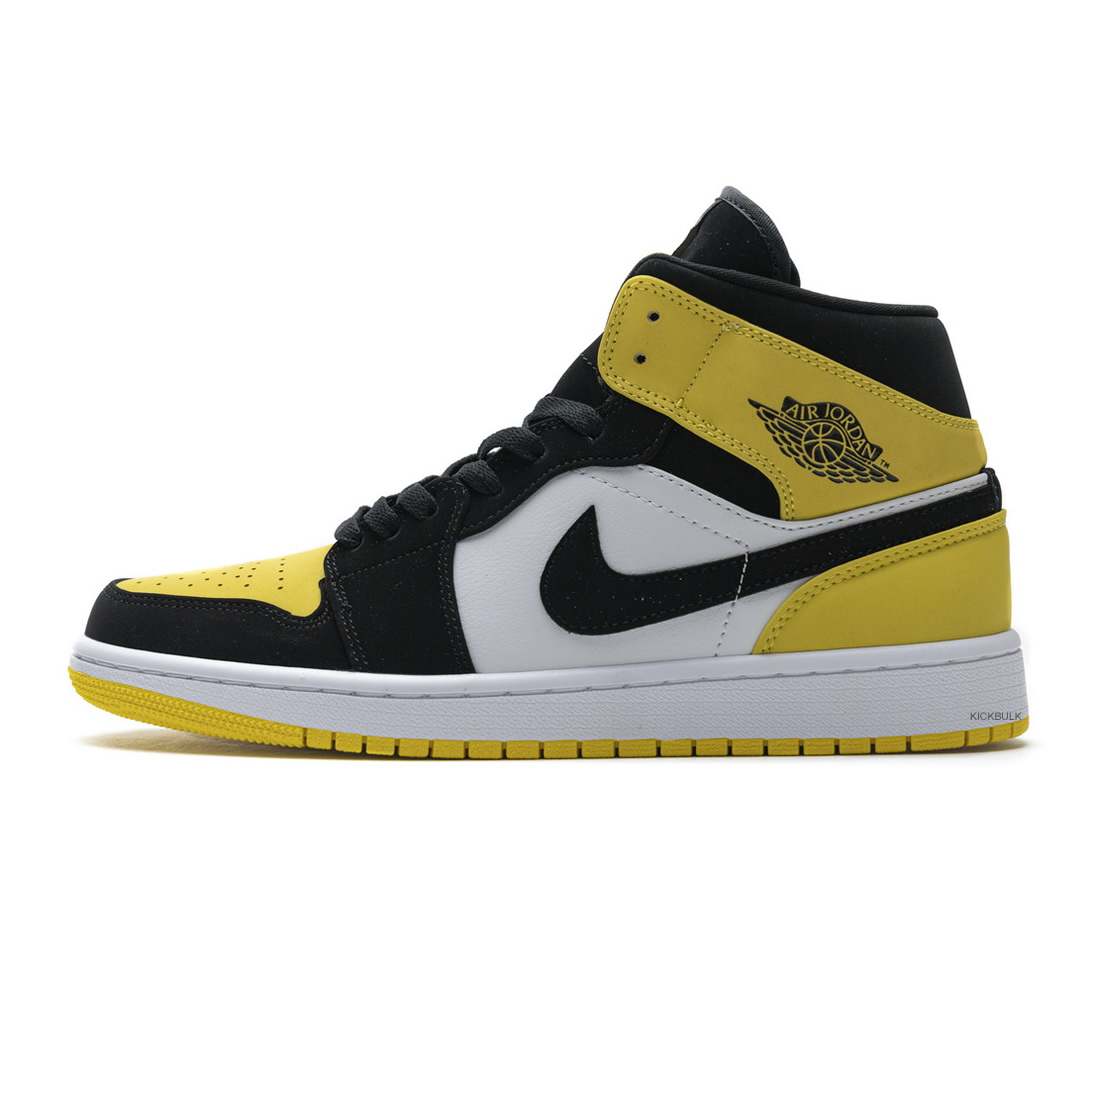 Nike Air Jordan 1 Mid Se Yellow Toe 852542 071 1 - www.kickbulk.org